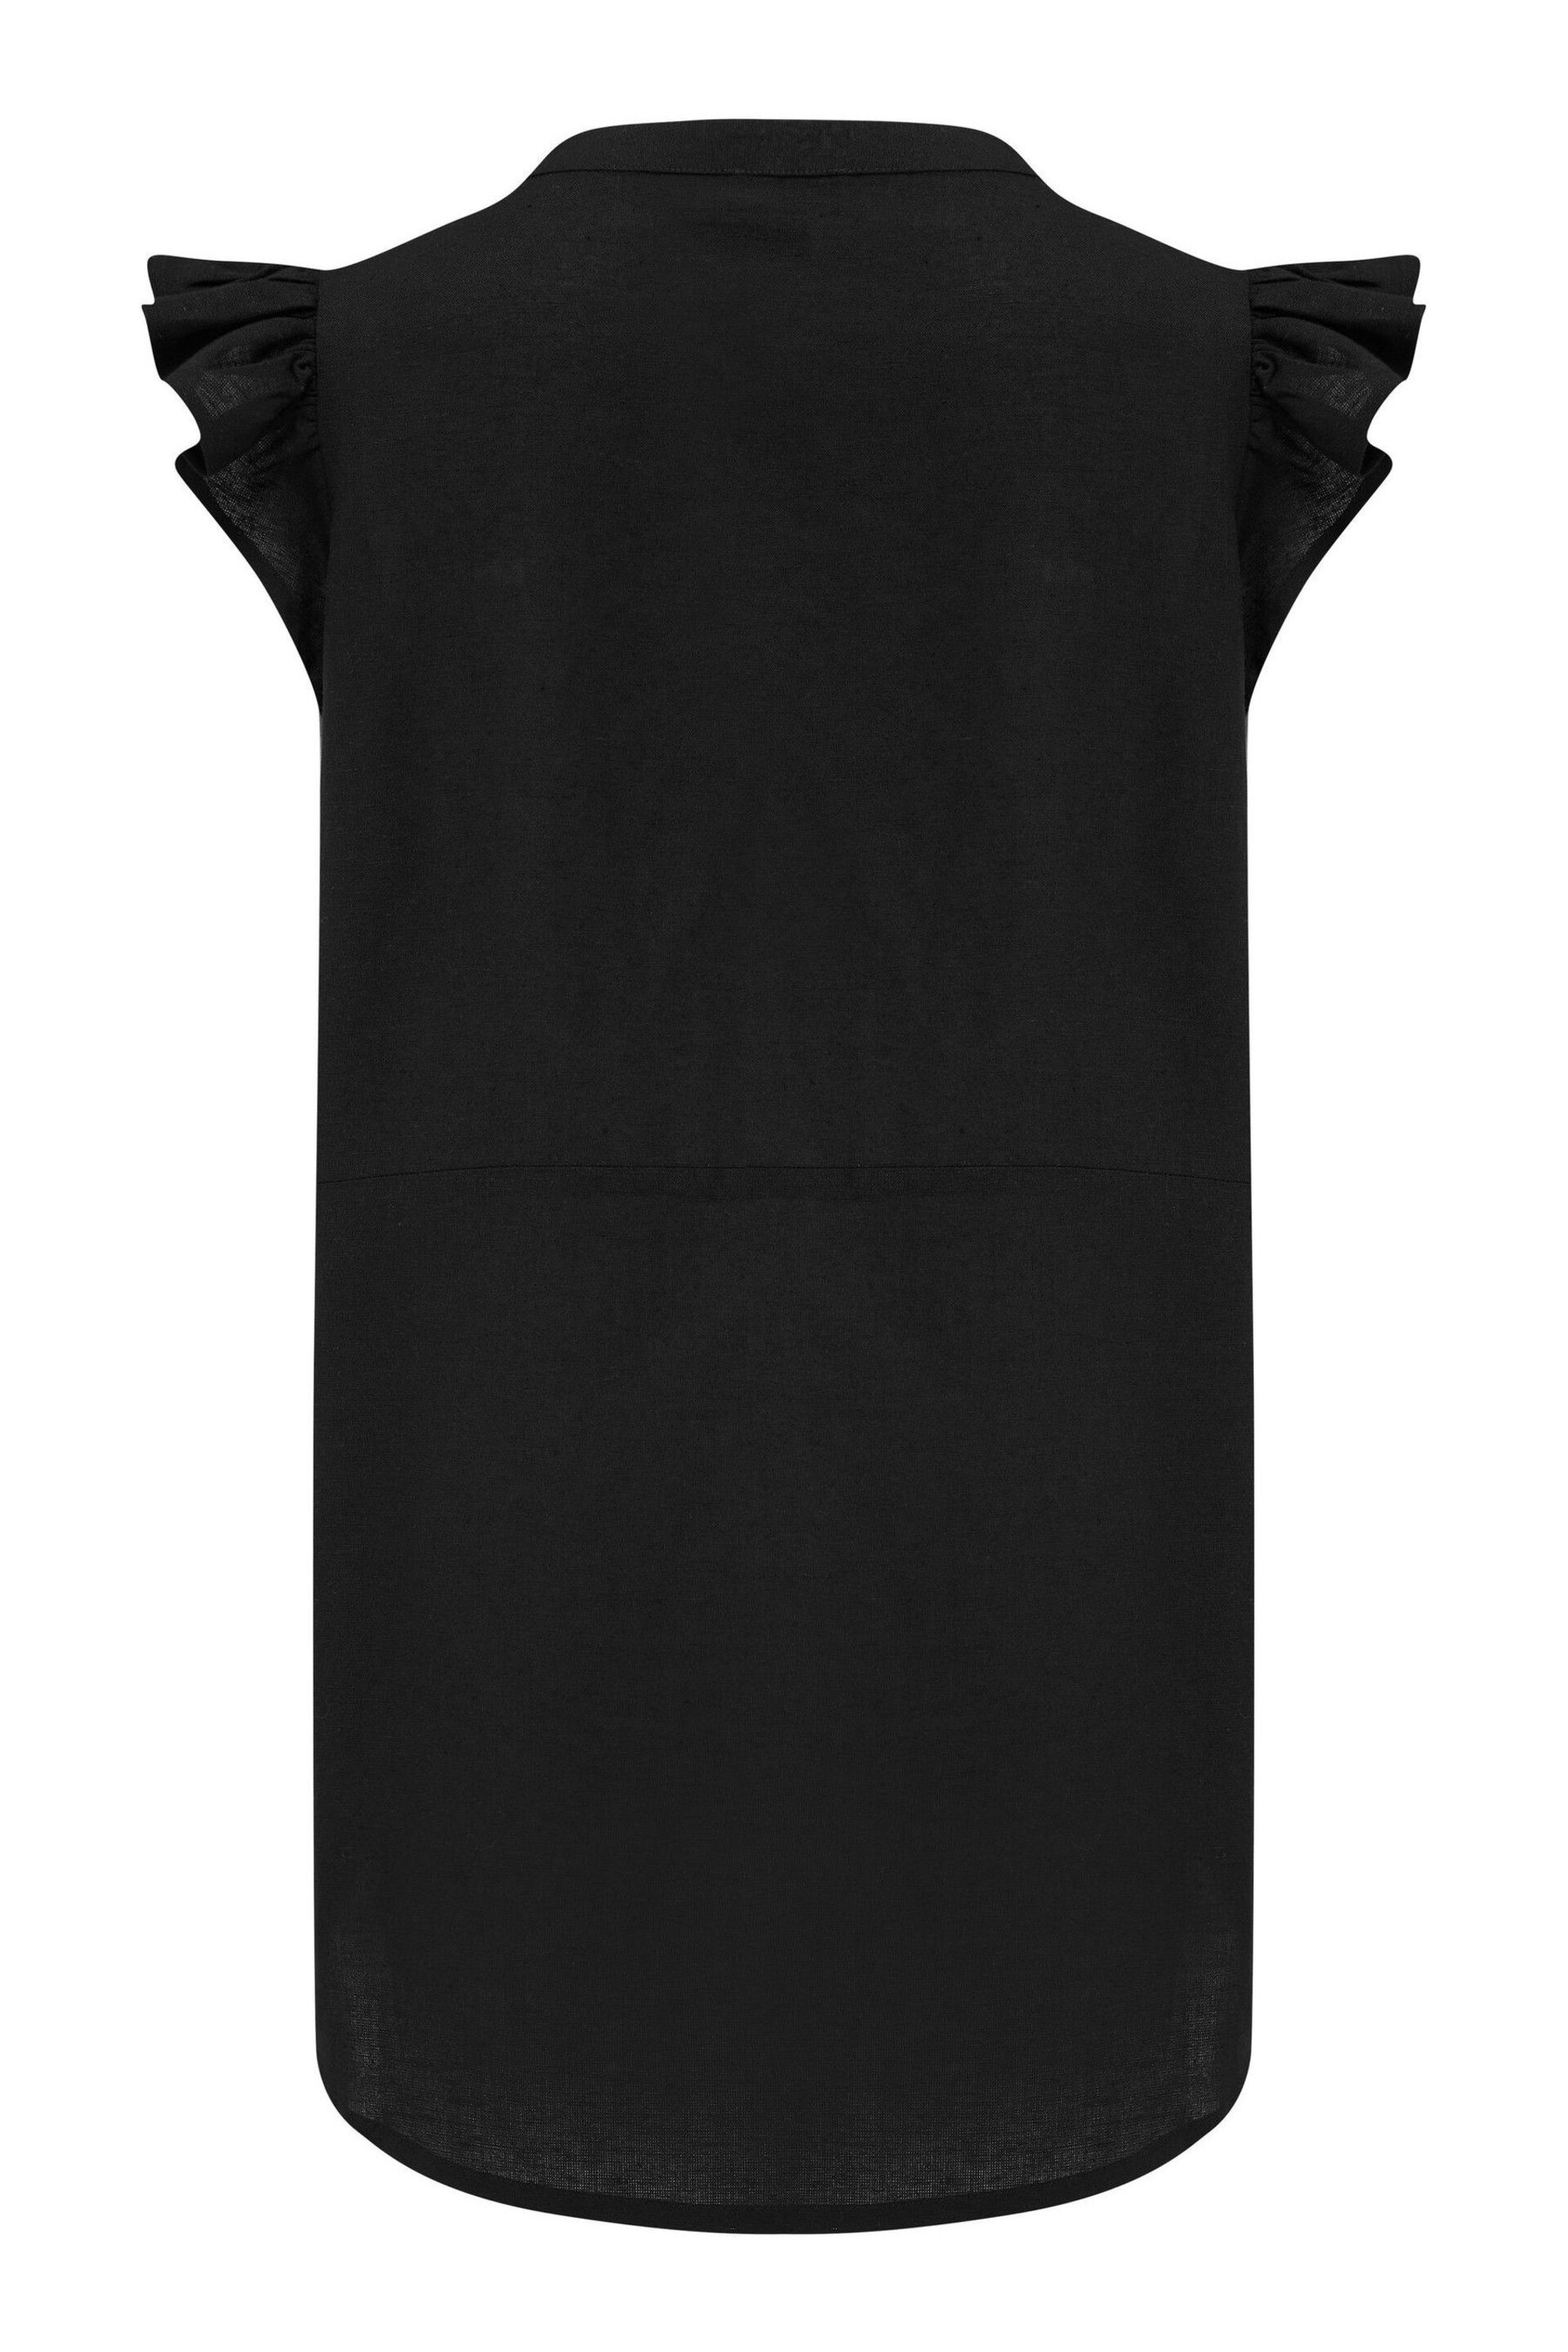 Pour Moi Black Poppy Fuller Bust Woven Longline Frill Sleeve Shirt - Image 4 of 4